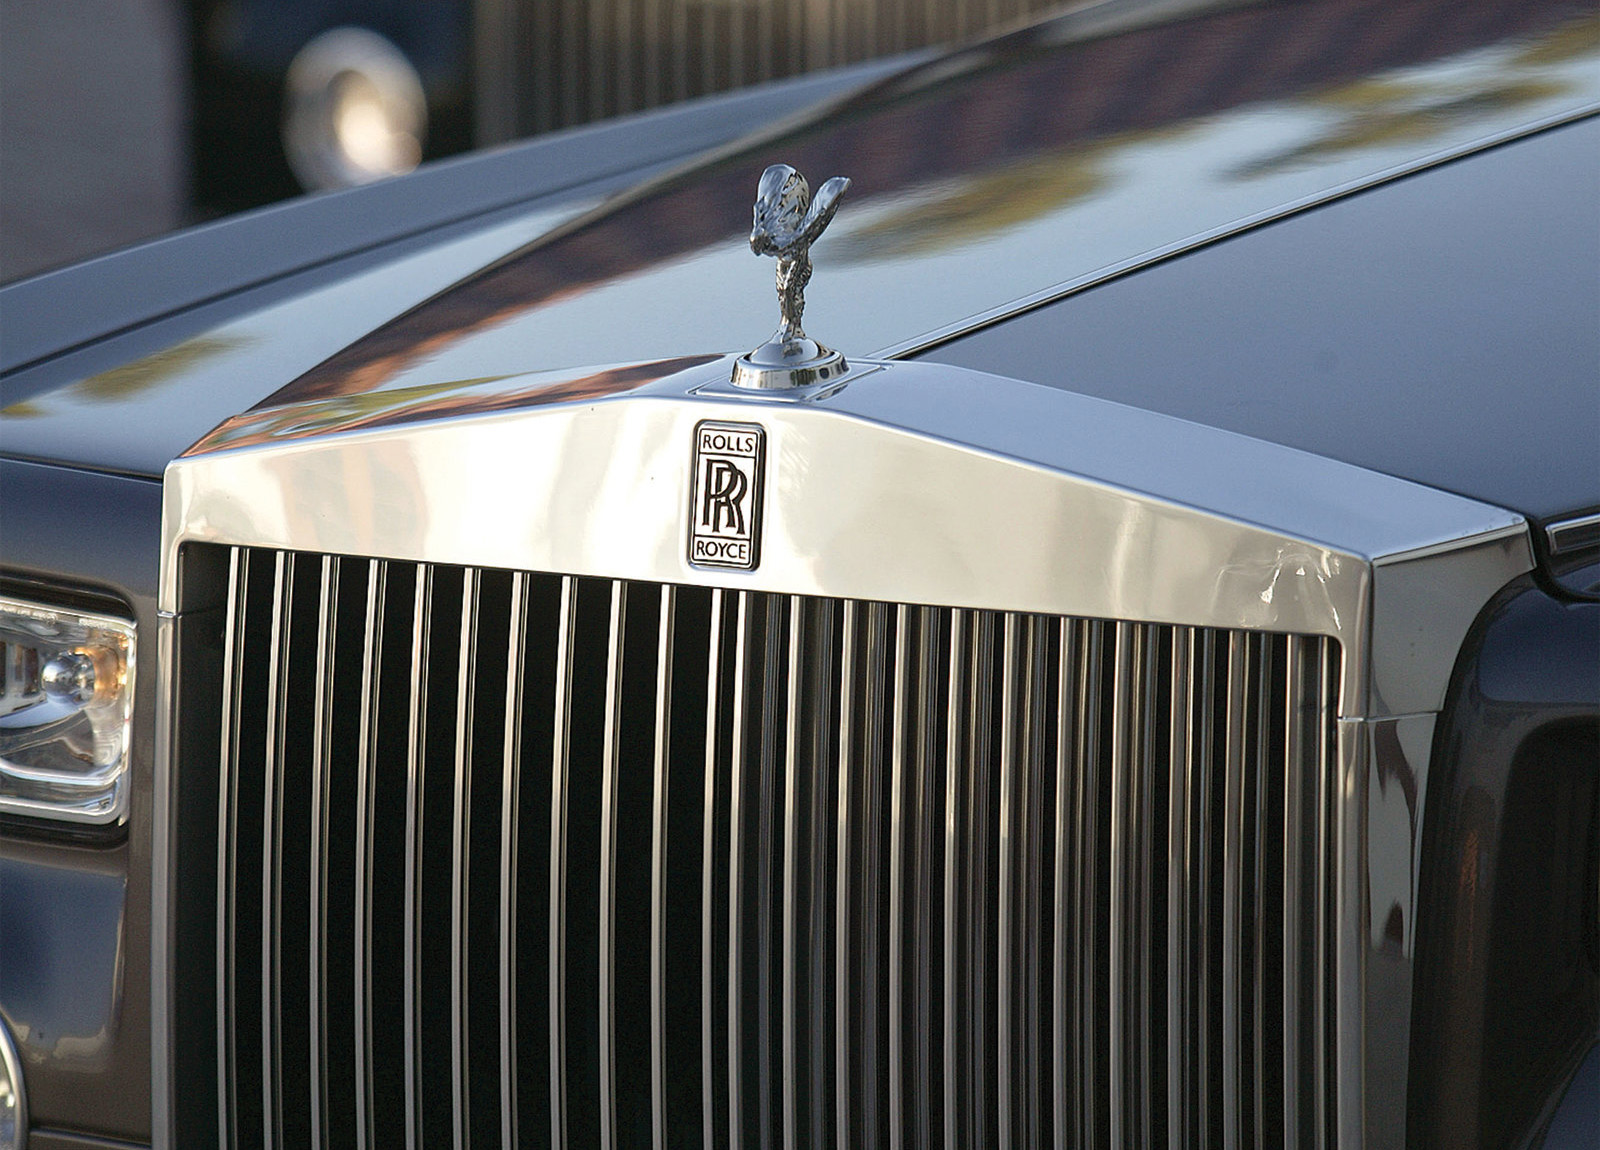 Как называется роллс ройс. Rolls Royce 2003. Rolls Royce Phantom. Роллс Ройс Фантом 2003 года. Зонтик Роллс Ройс.